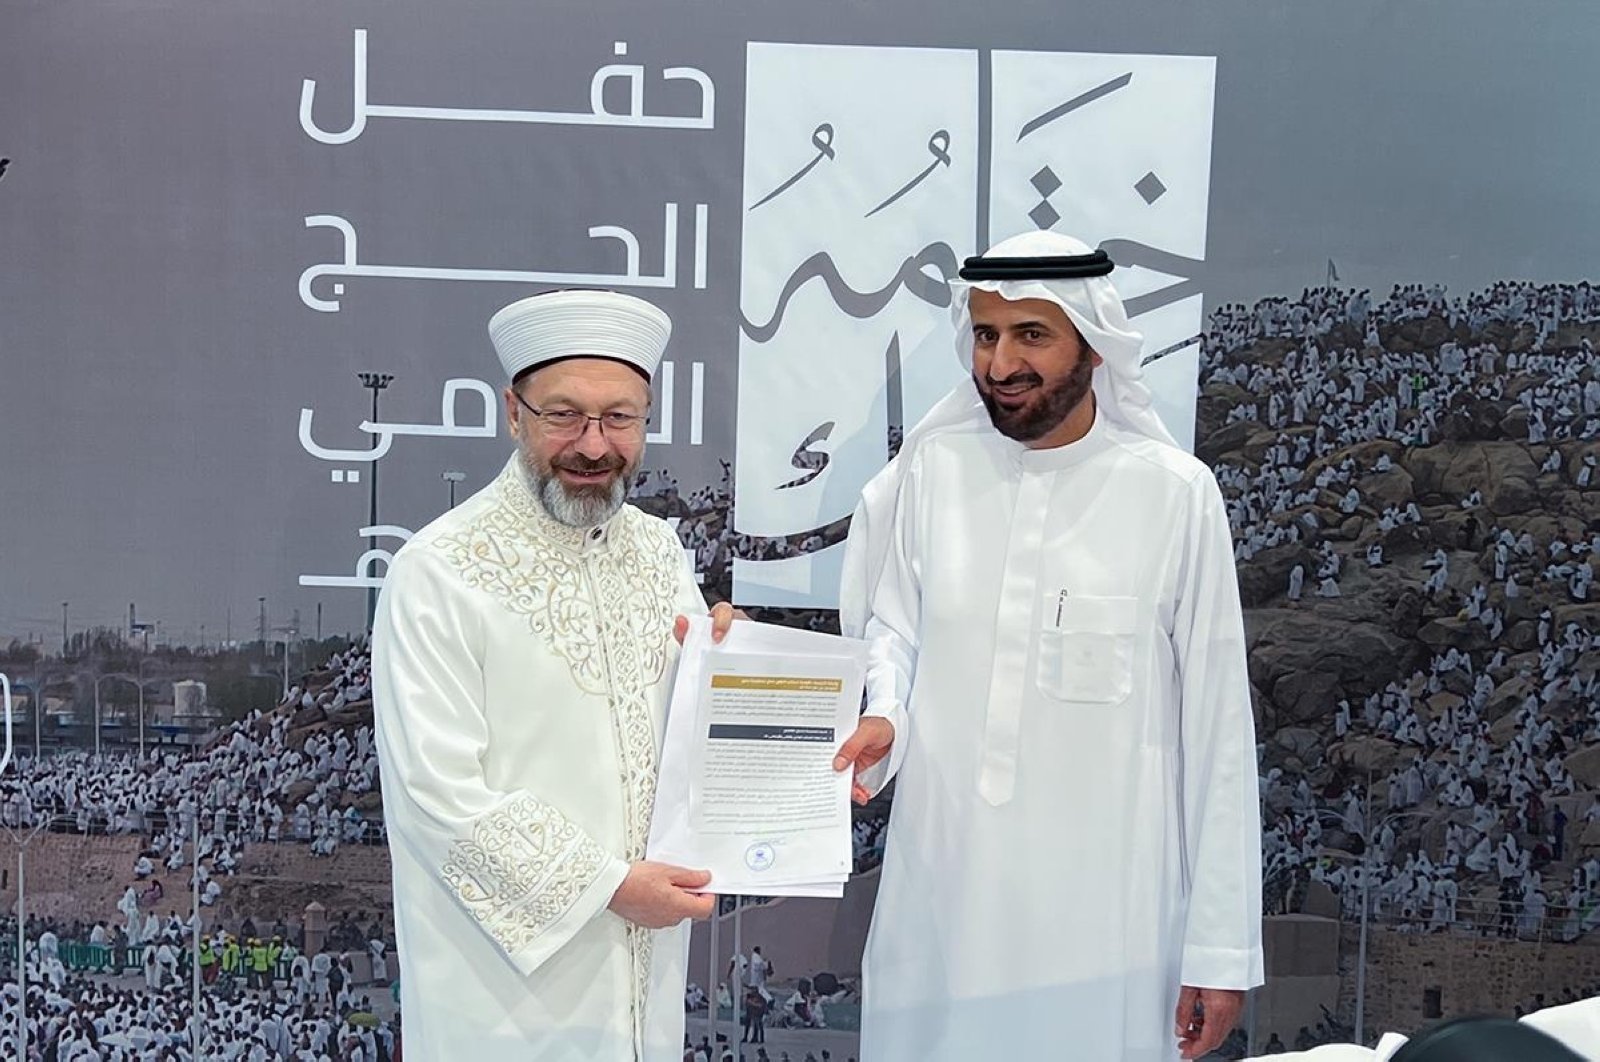 Diyanet Turki menerima penghargaan tempat pertama dari Kementerian Haji Saudi